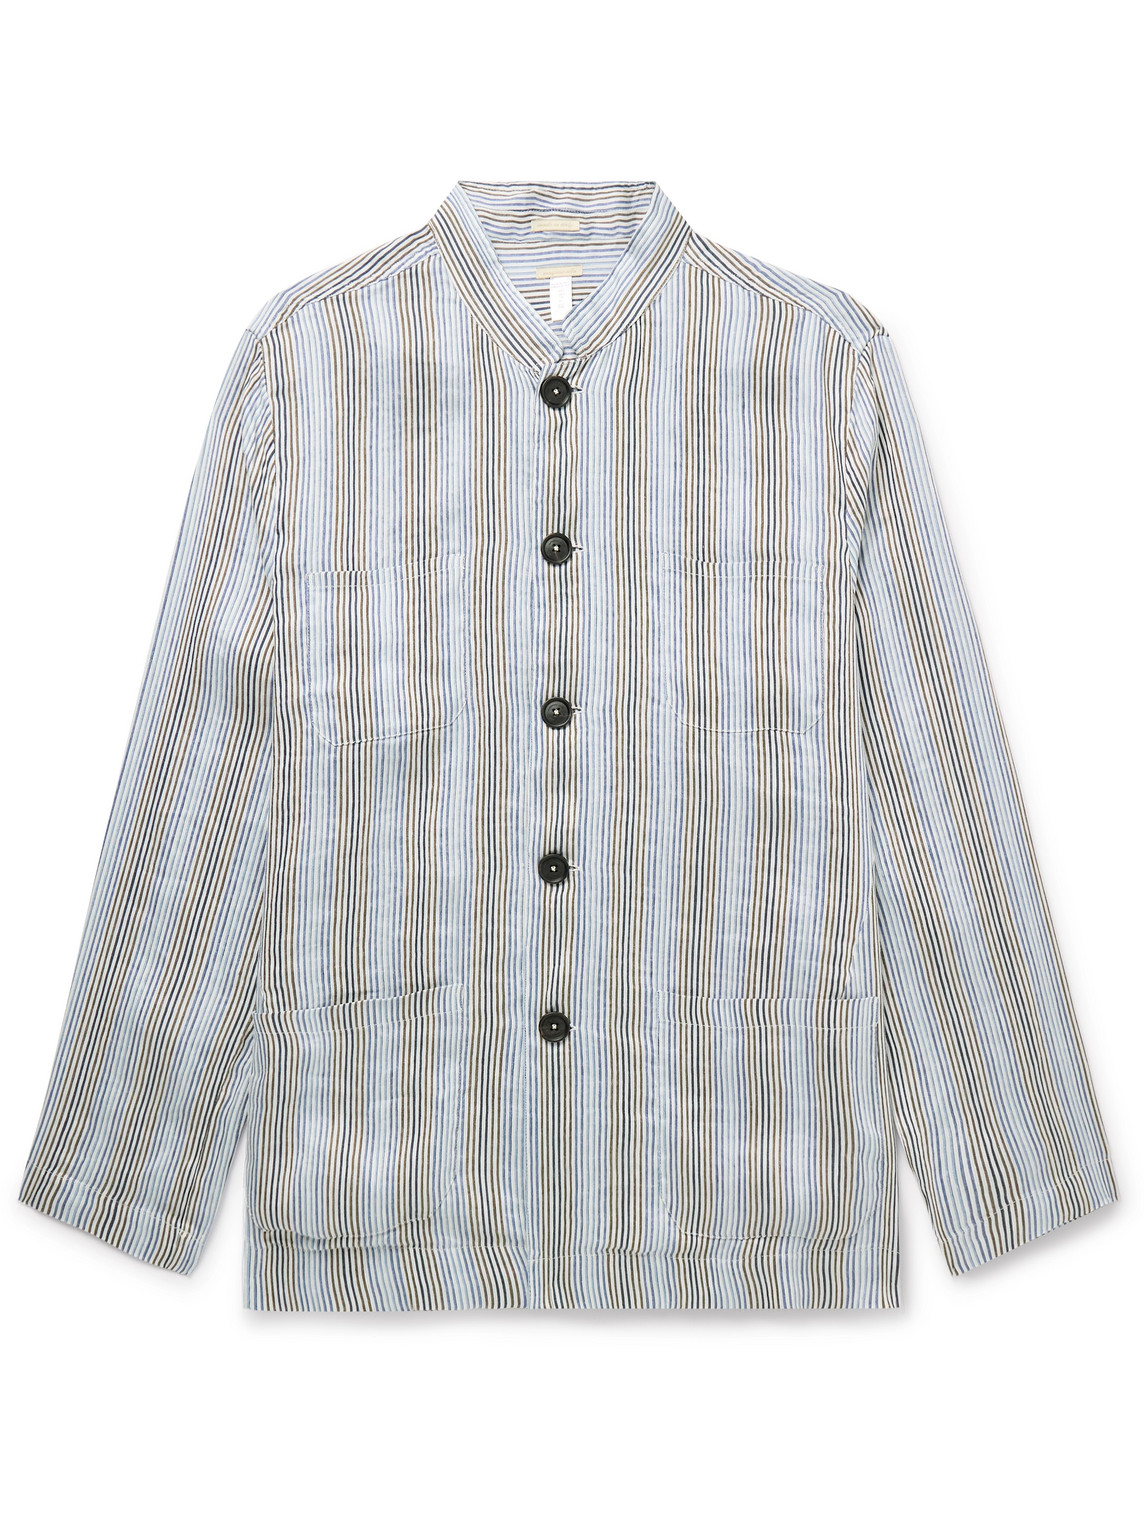 Cina2 Grandad-Collar Striped Linen and Silk-Blend Overshirt